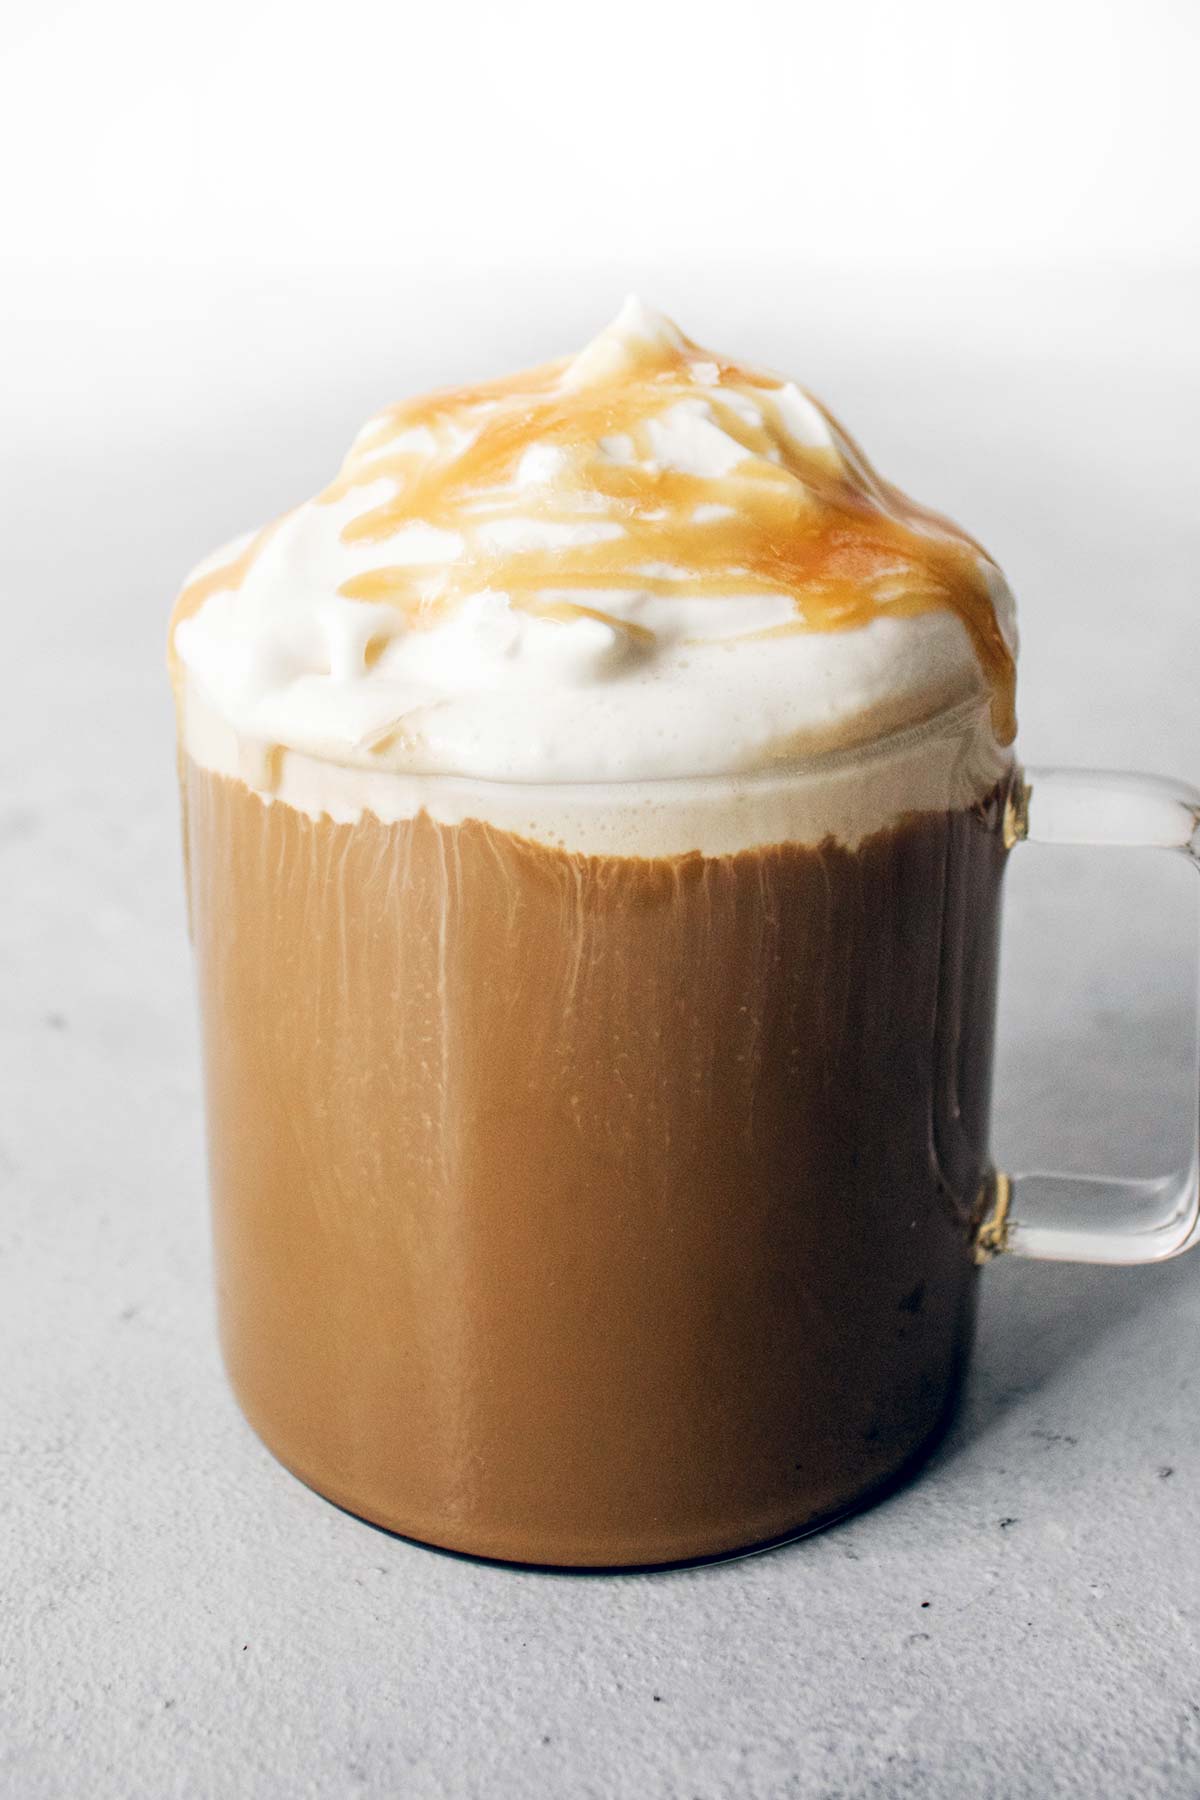 Gezouten karamel latte gegarneerd met slagroom en karamel besprenkeling in een glazen mok.